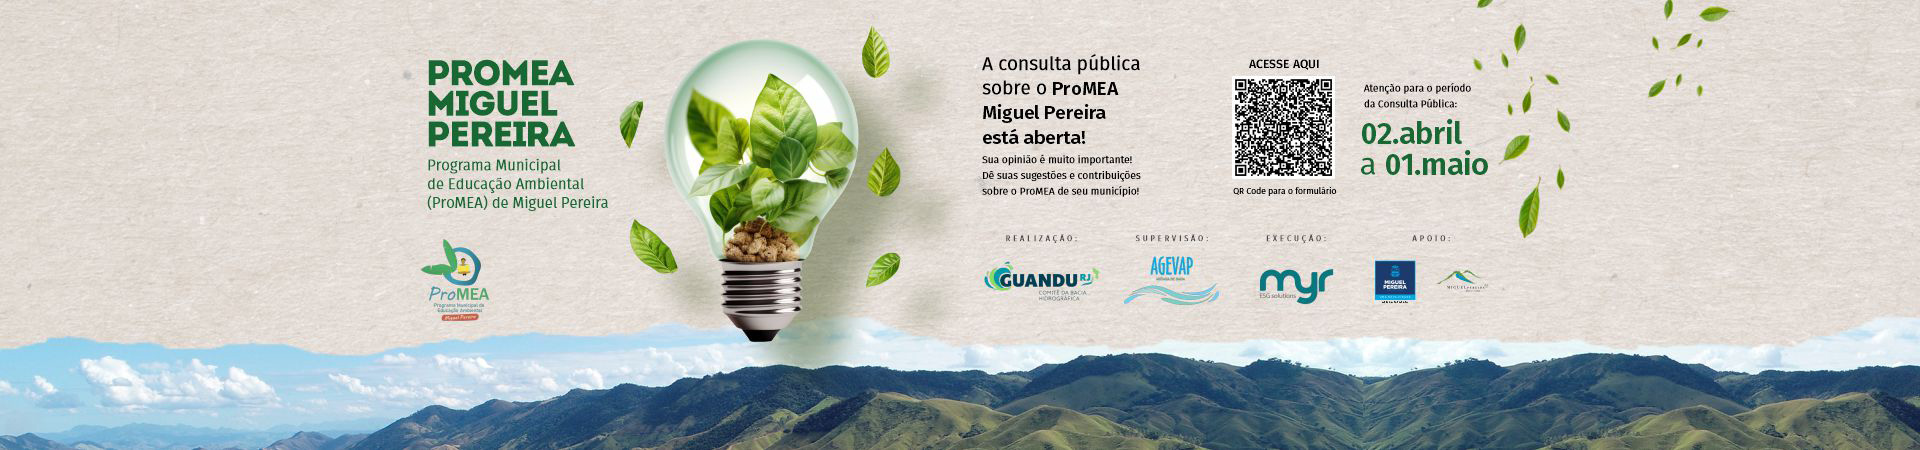 Consulta Pública sobre o Programa Municipal de Educação Ambiental (ProMEA) de Miguel Pereira